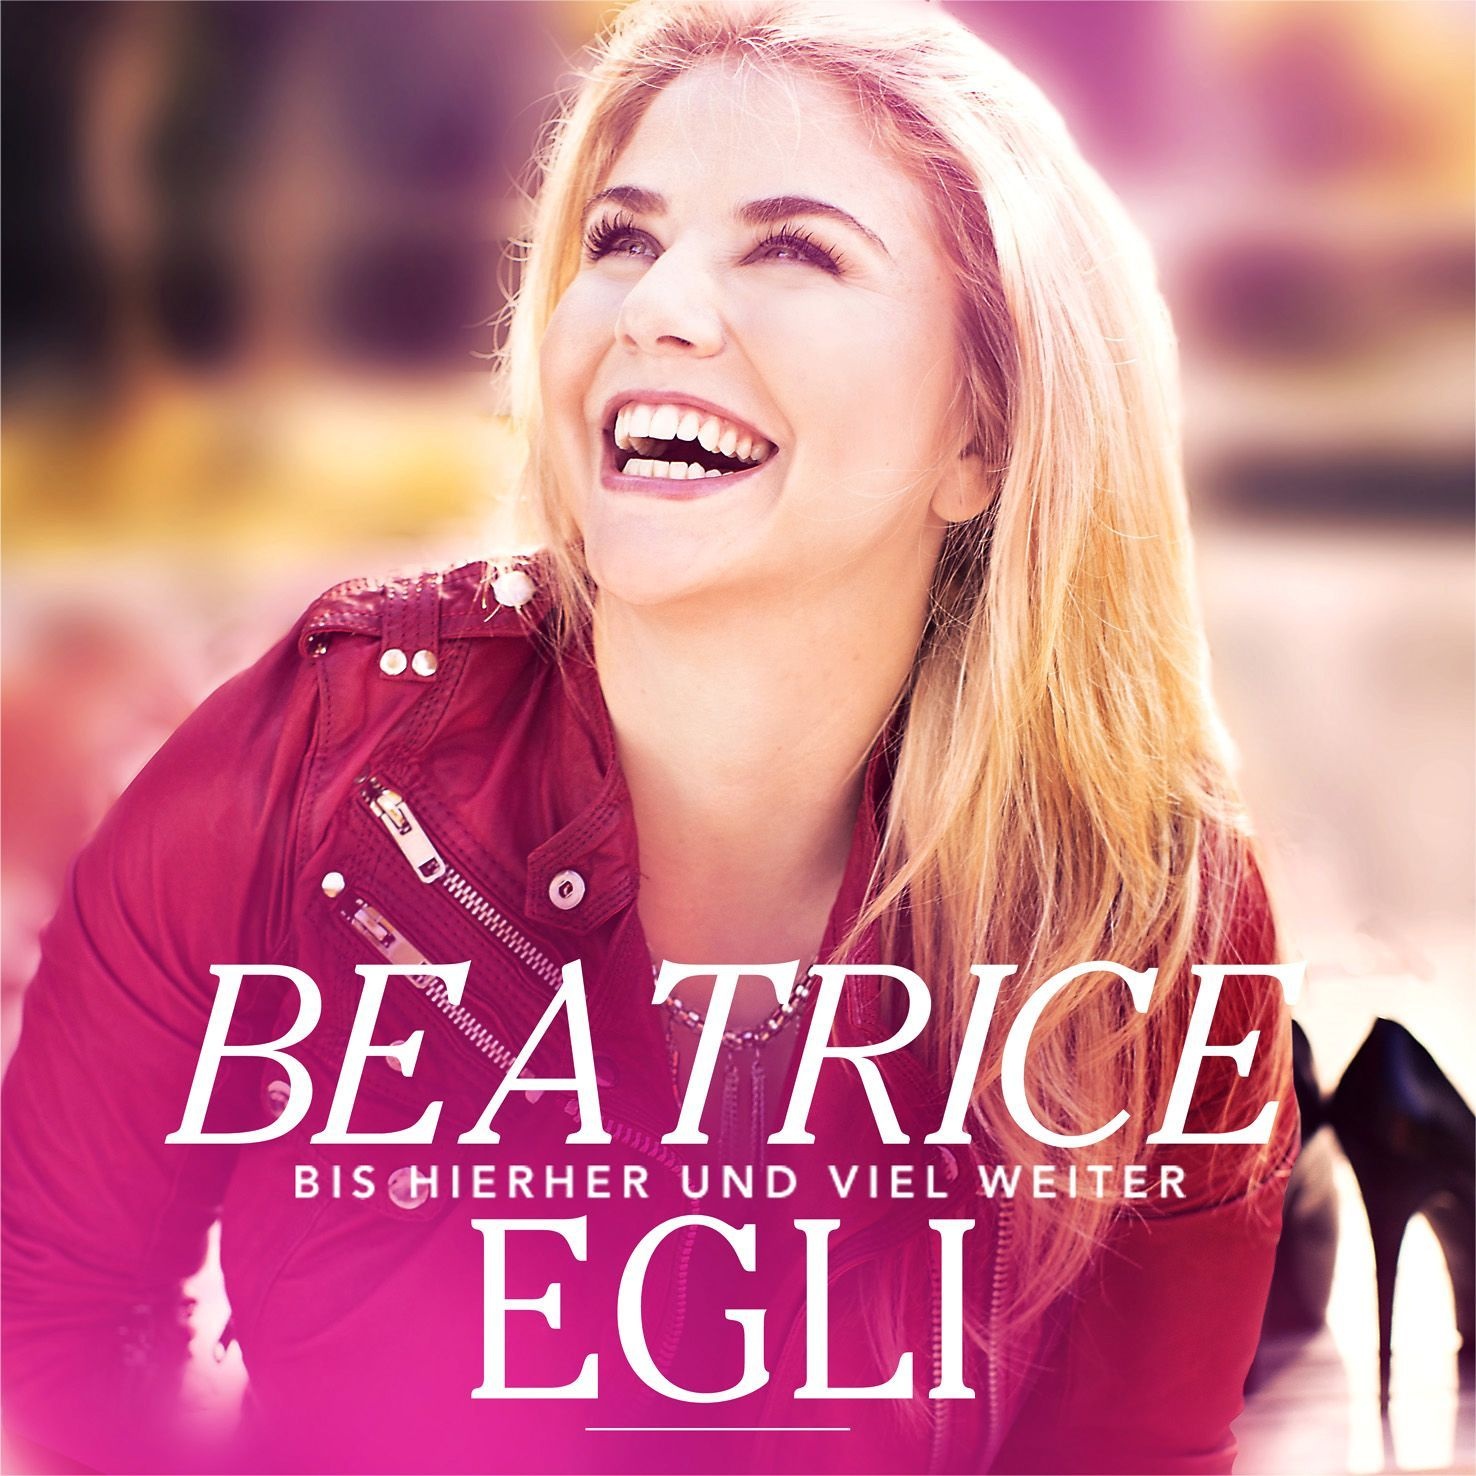 Bis hierher und viel weiter - Beatrice Egli. (CD)